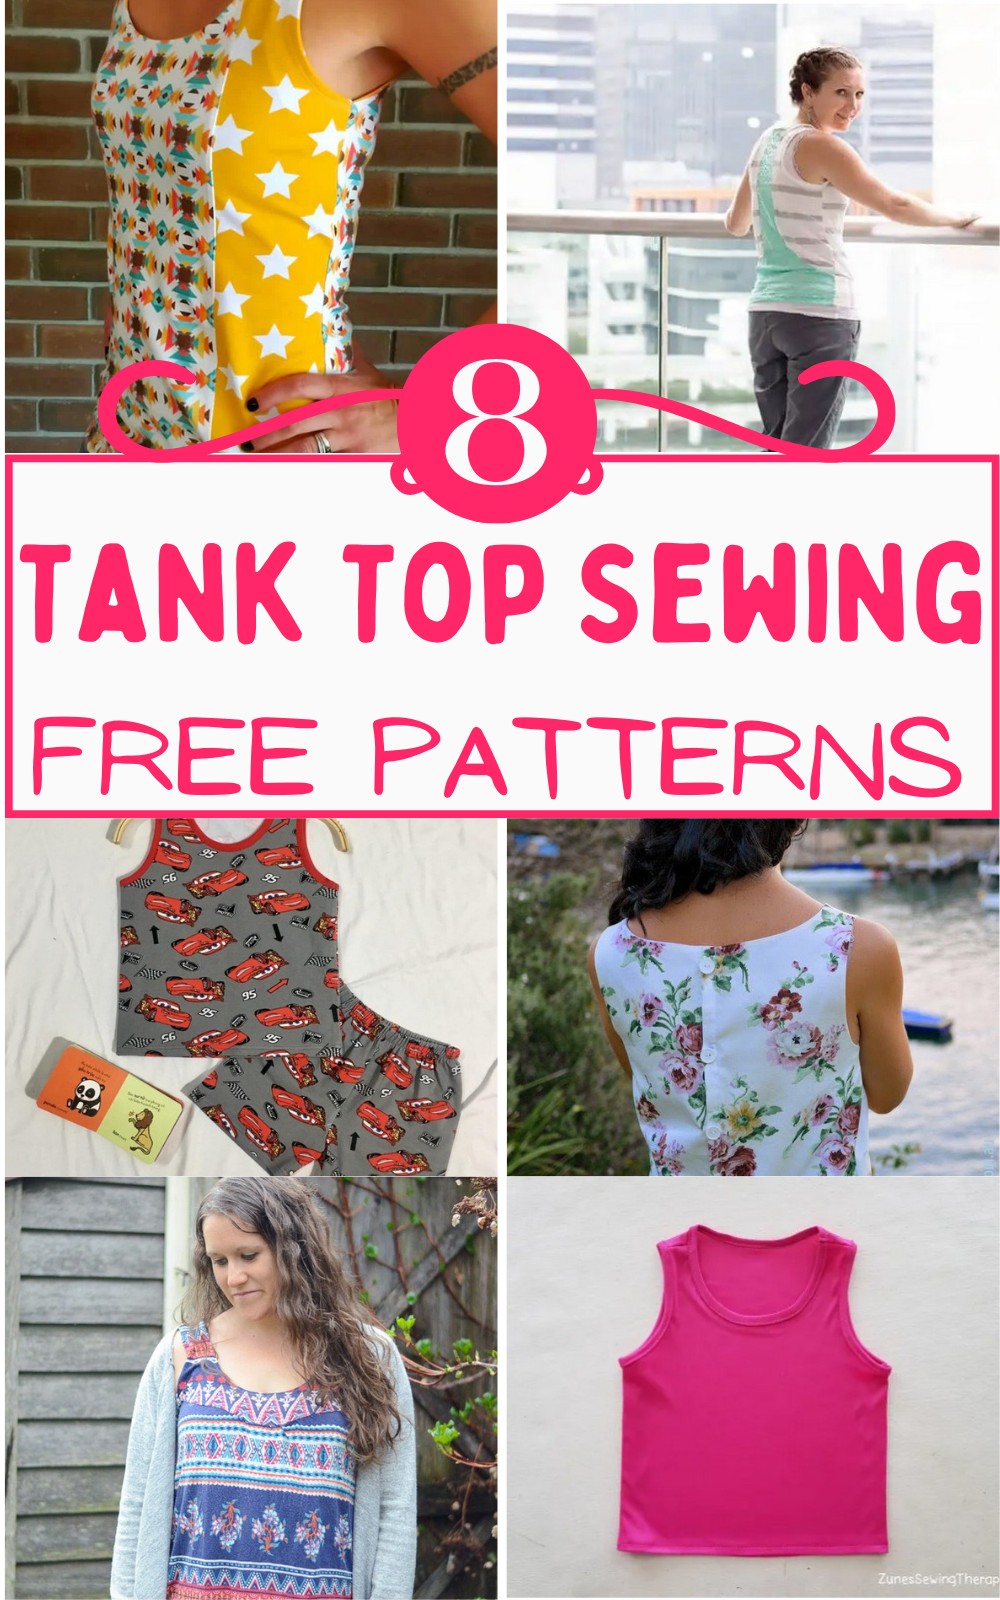 Free Tank Top Sewing Patterns 1